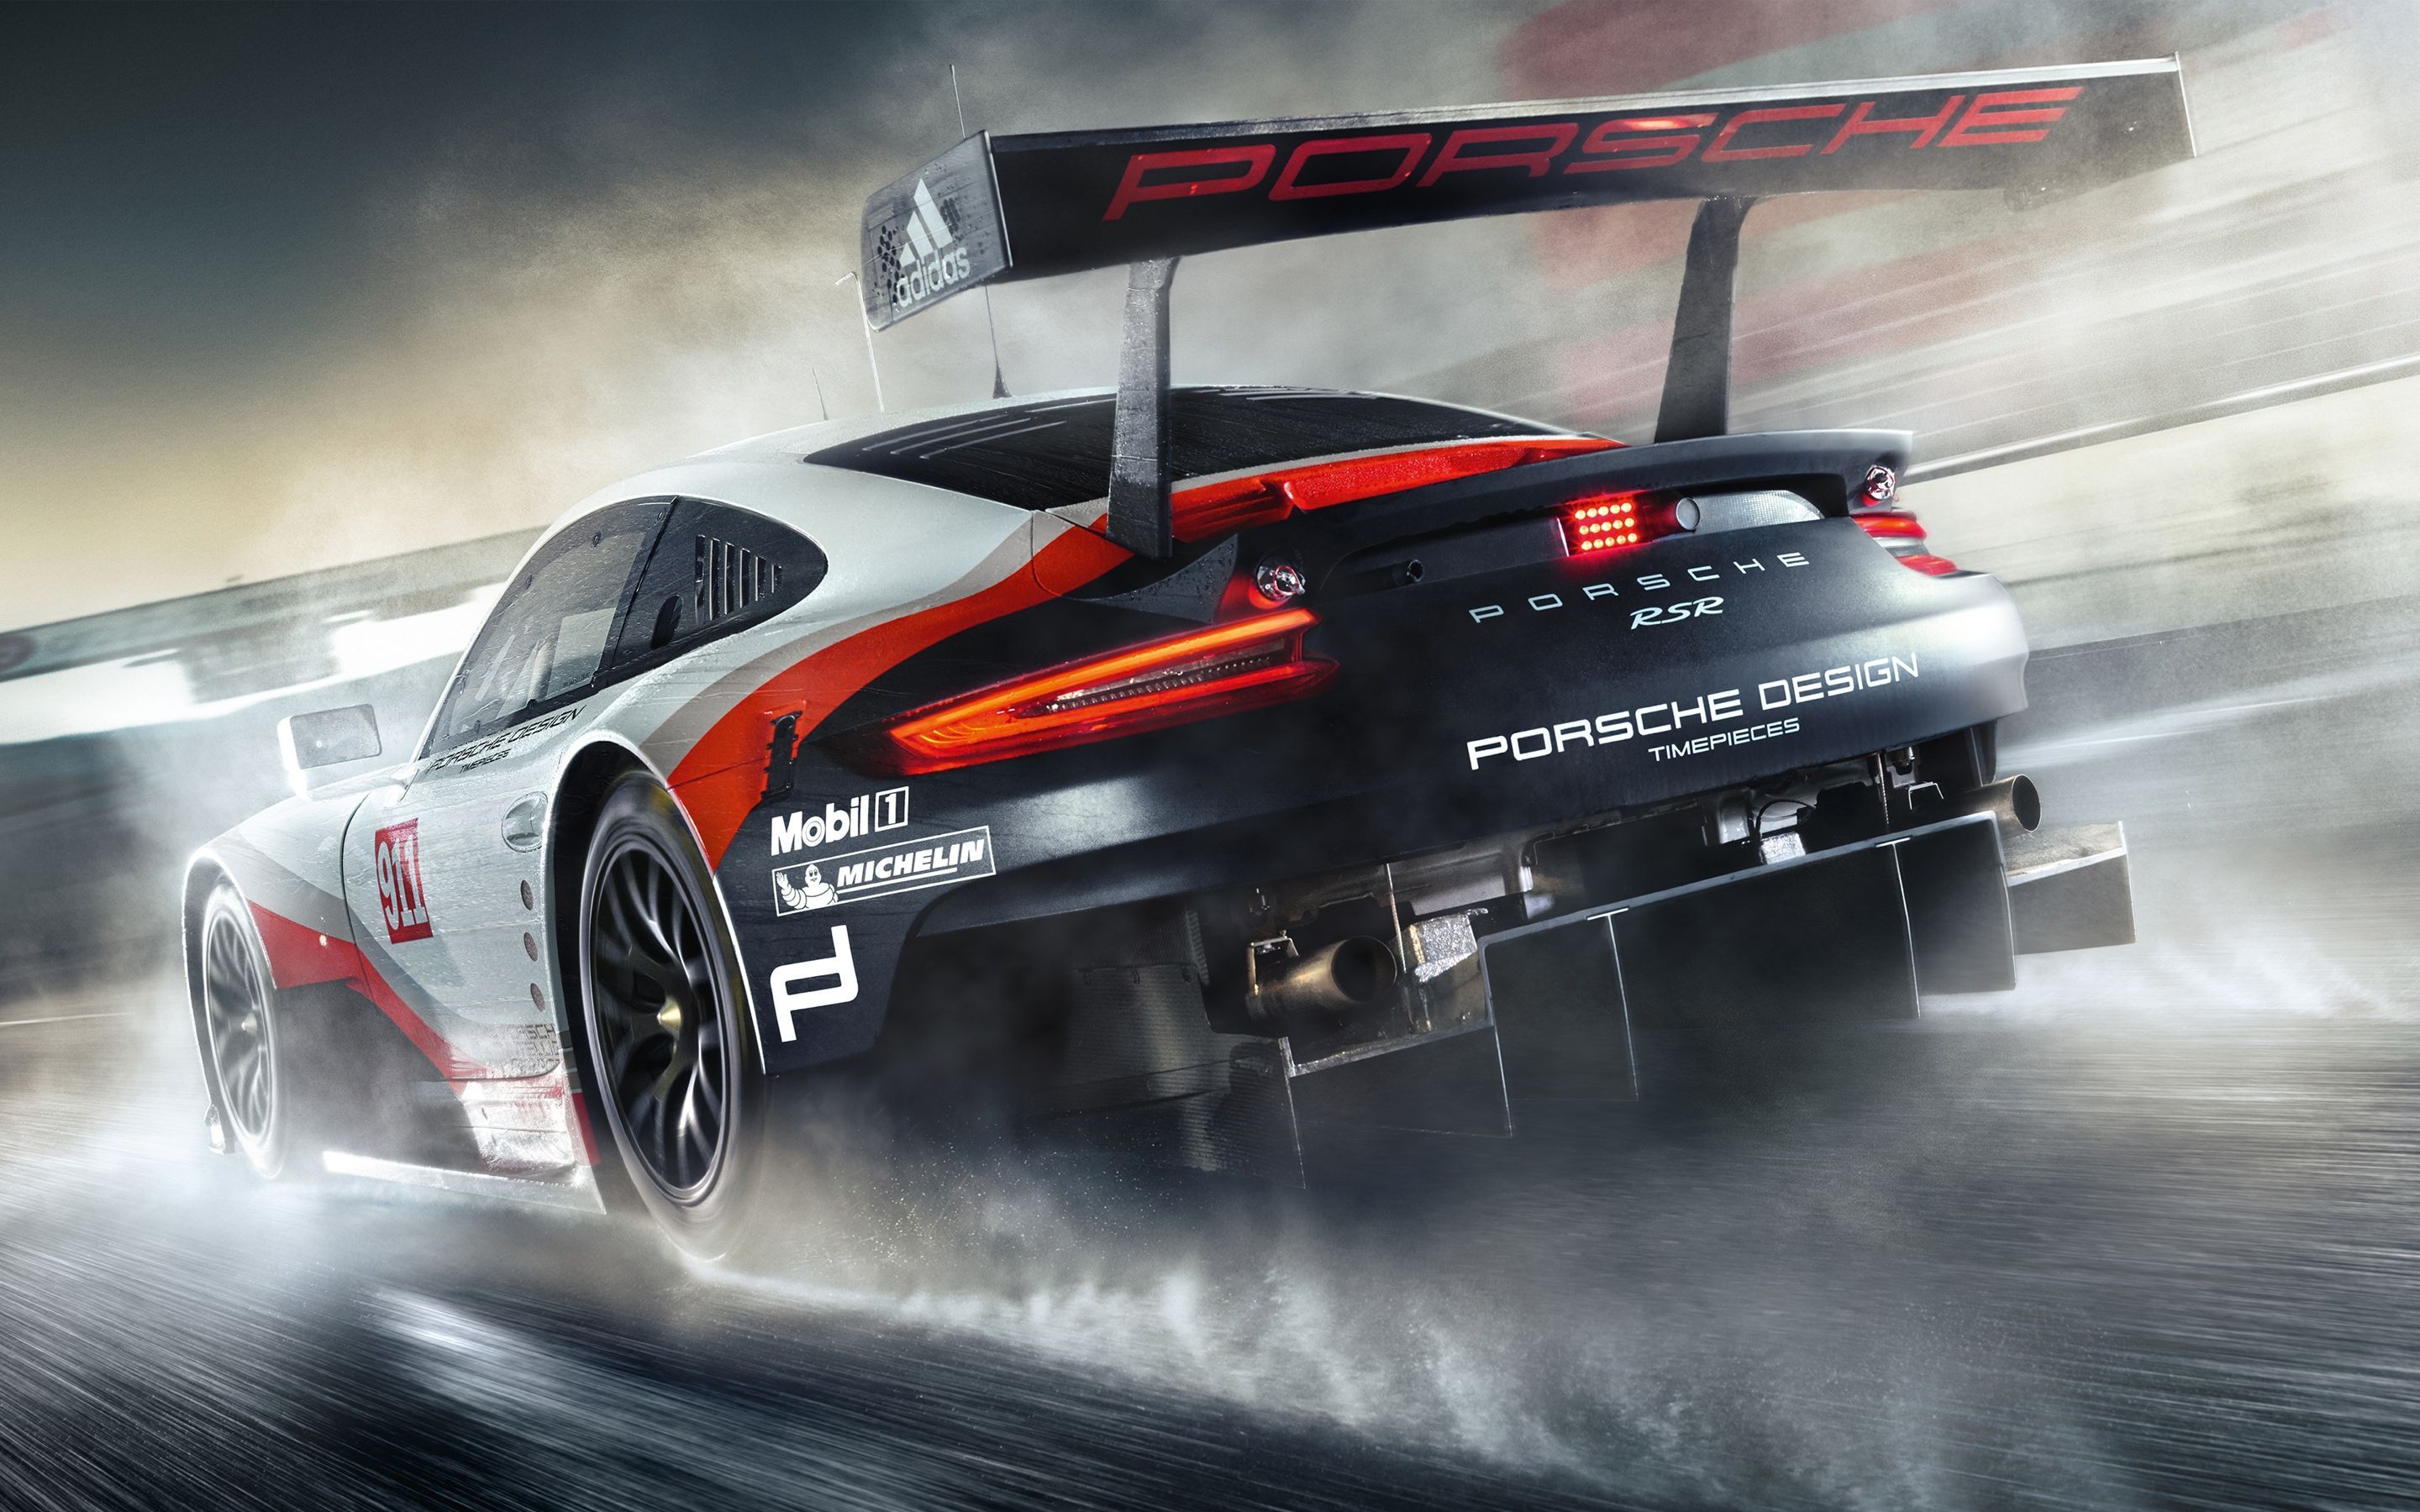 Porsche Racing Wallpaper Free .wallpaperaccess.com